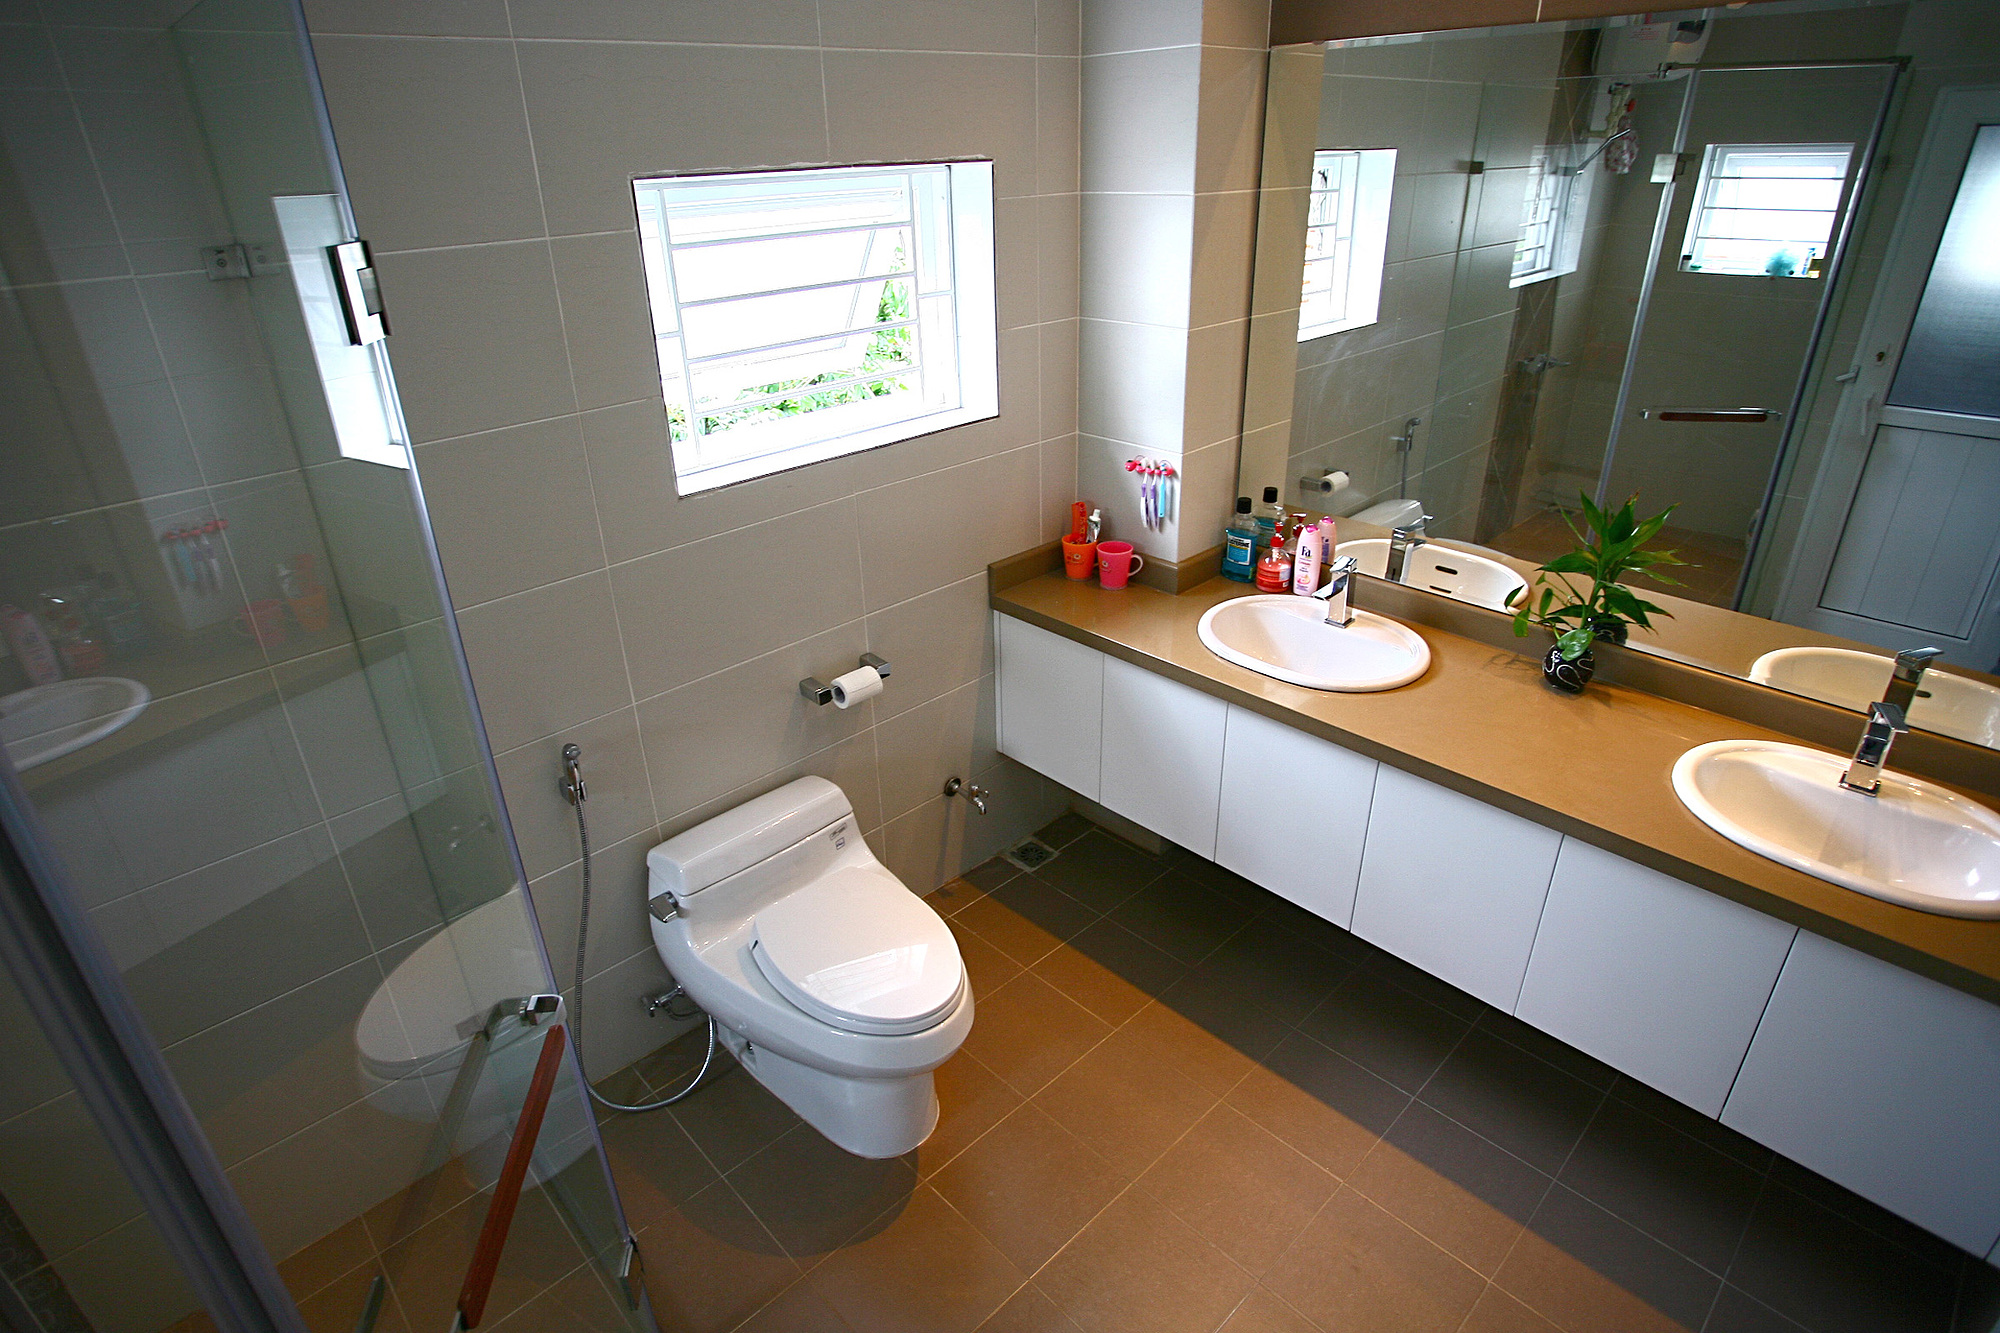 Mẫu phòng tắm này có thiết kế hiện đại, với các khu vực tắm và vệ sinh được ngăn cách nhau bởi các bức tường kính